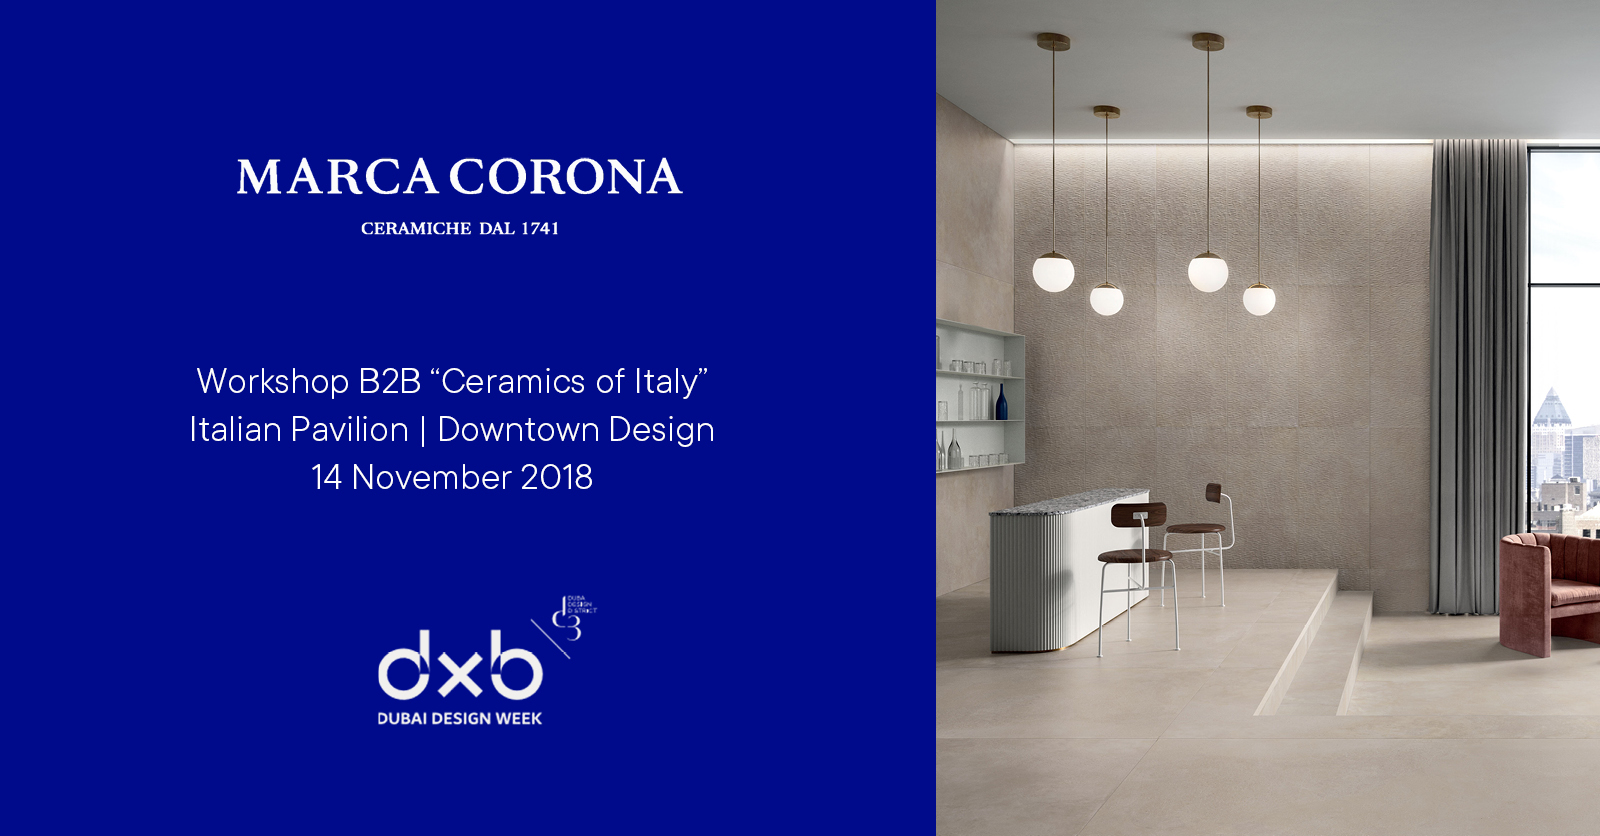 Marca Corona zu Dubai Design Week 2018